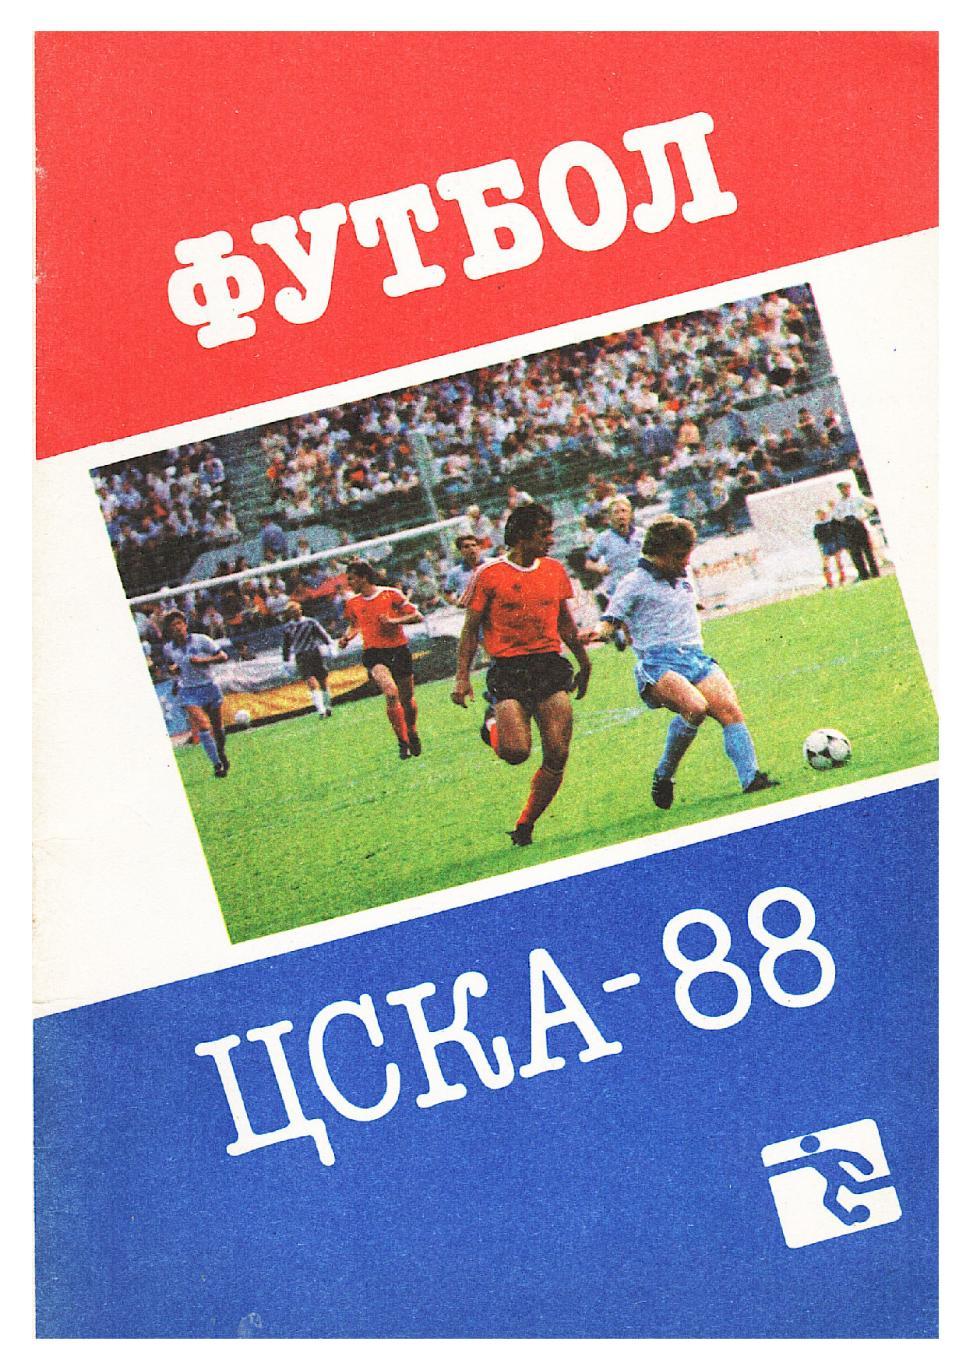 Футбол. ЦСКА–88.